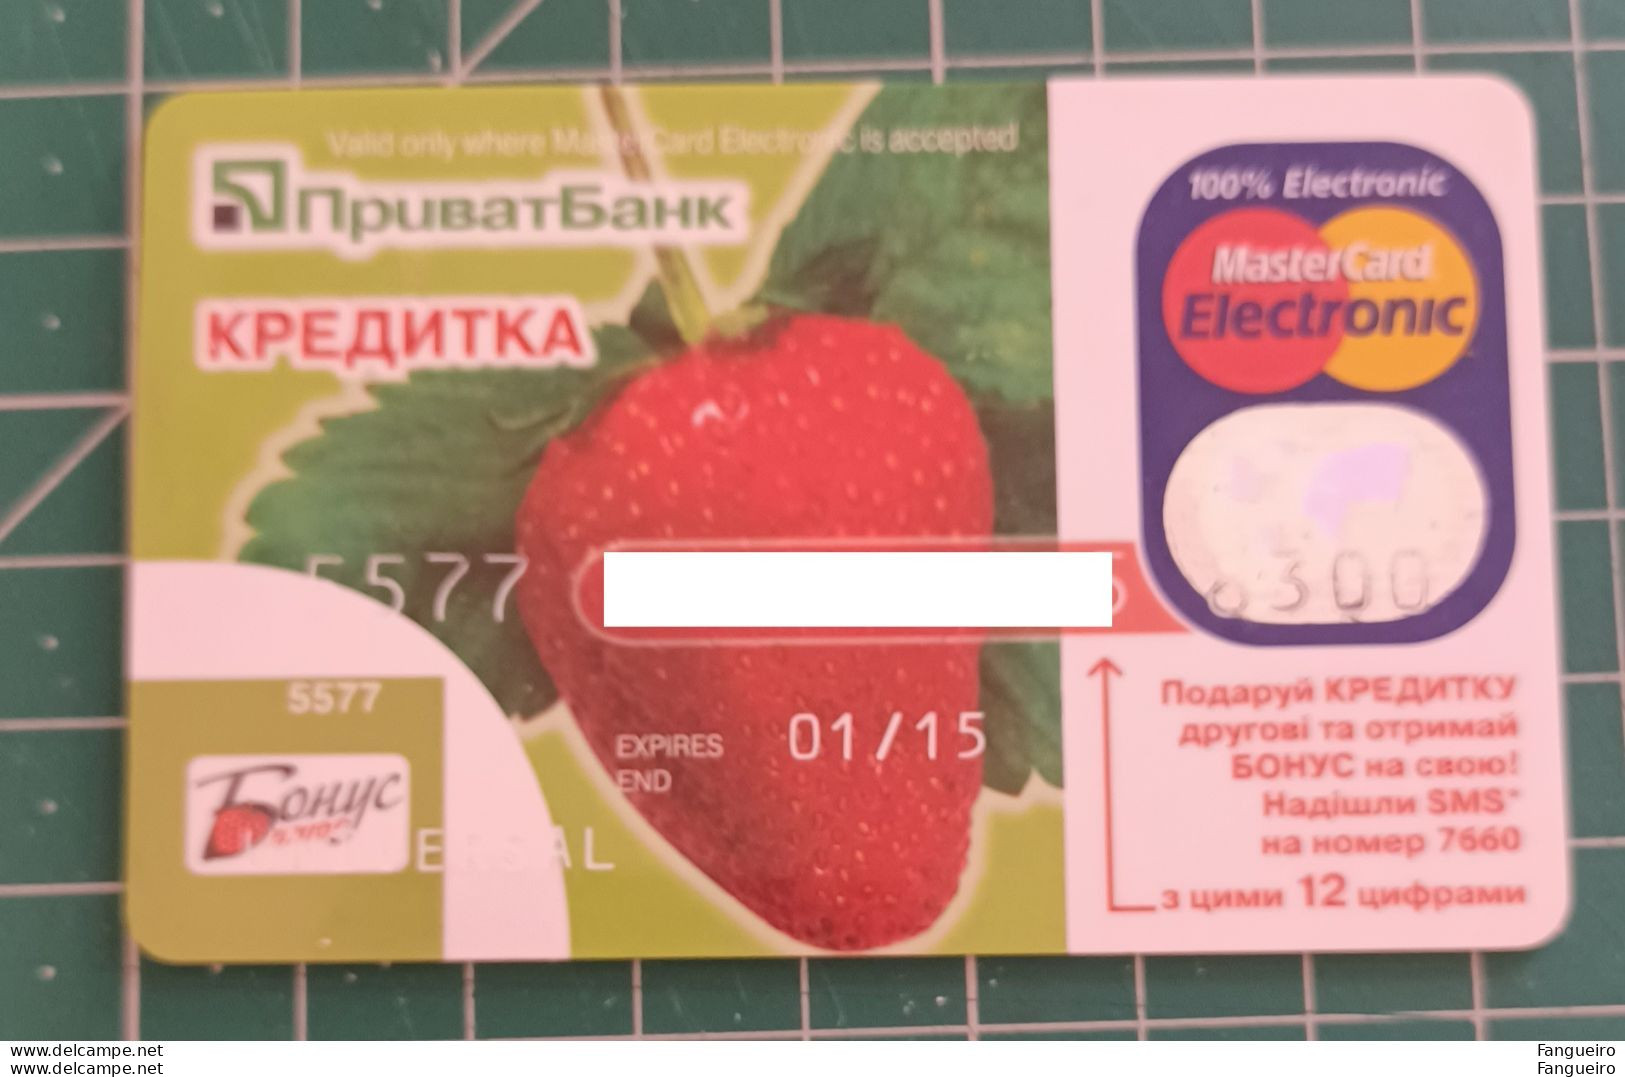 UKRAINE CREDIT CARD PRIVAT BANK - Krediet Kaarten (vervaldatum Min. 10 Jaar)